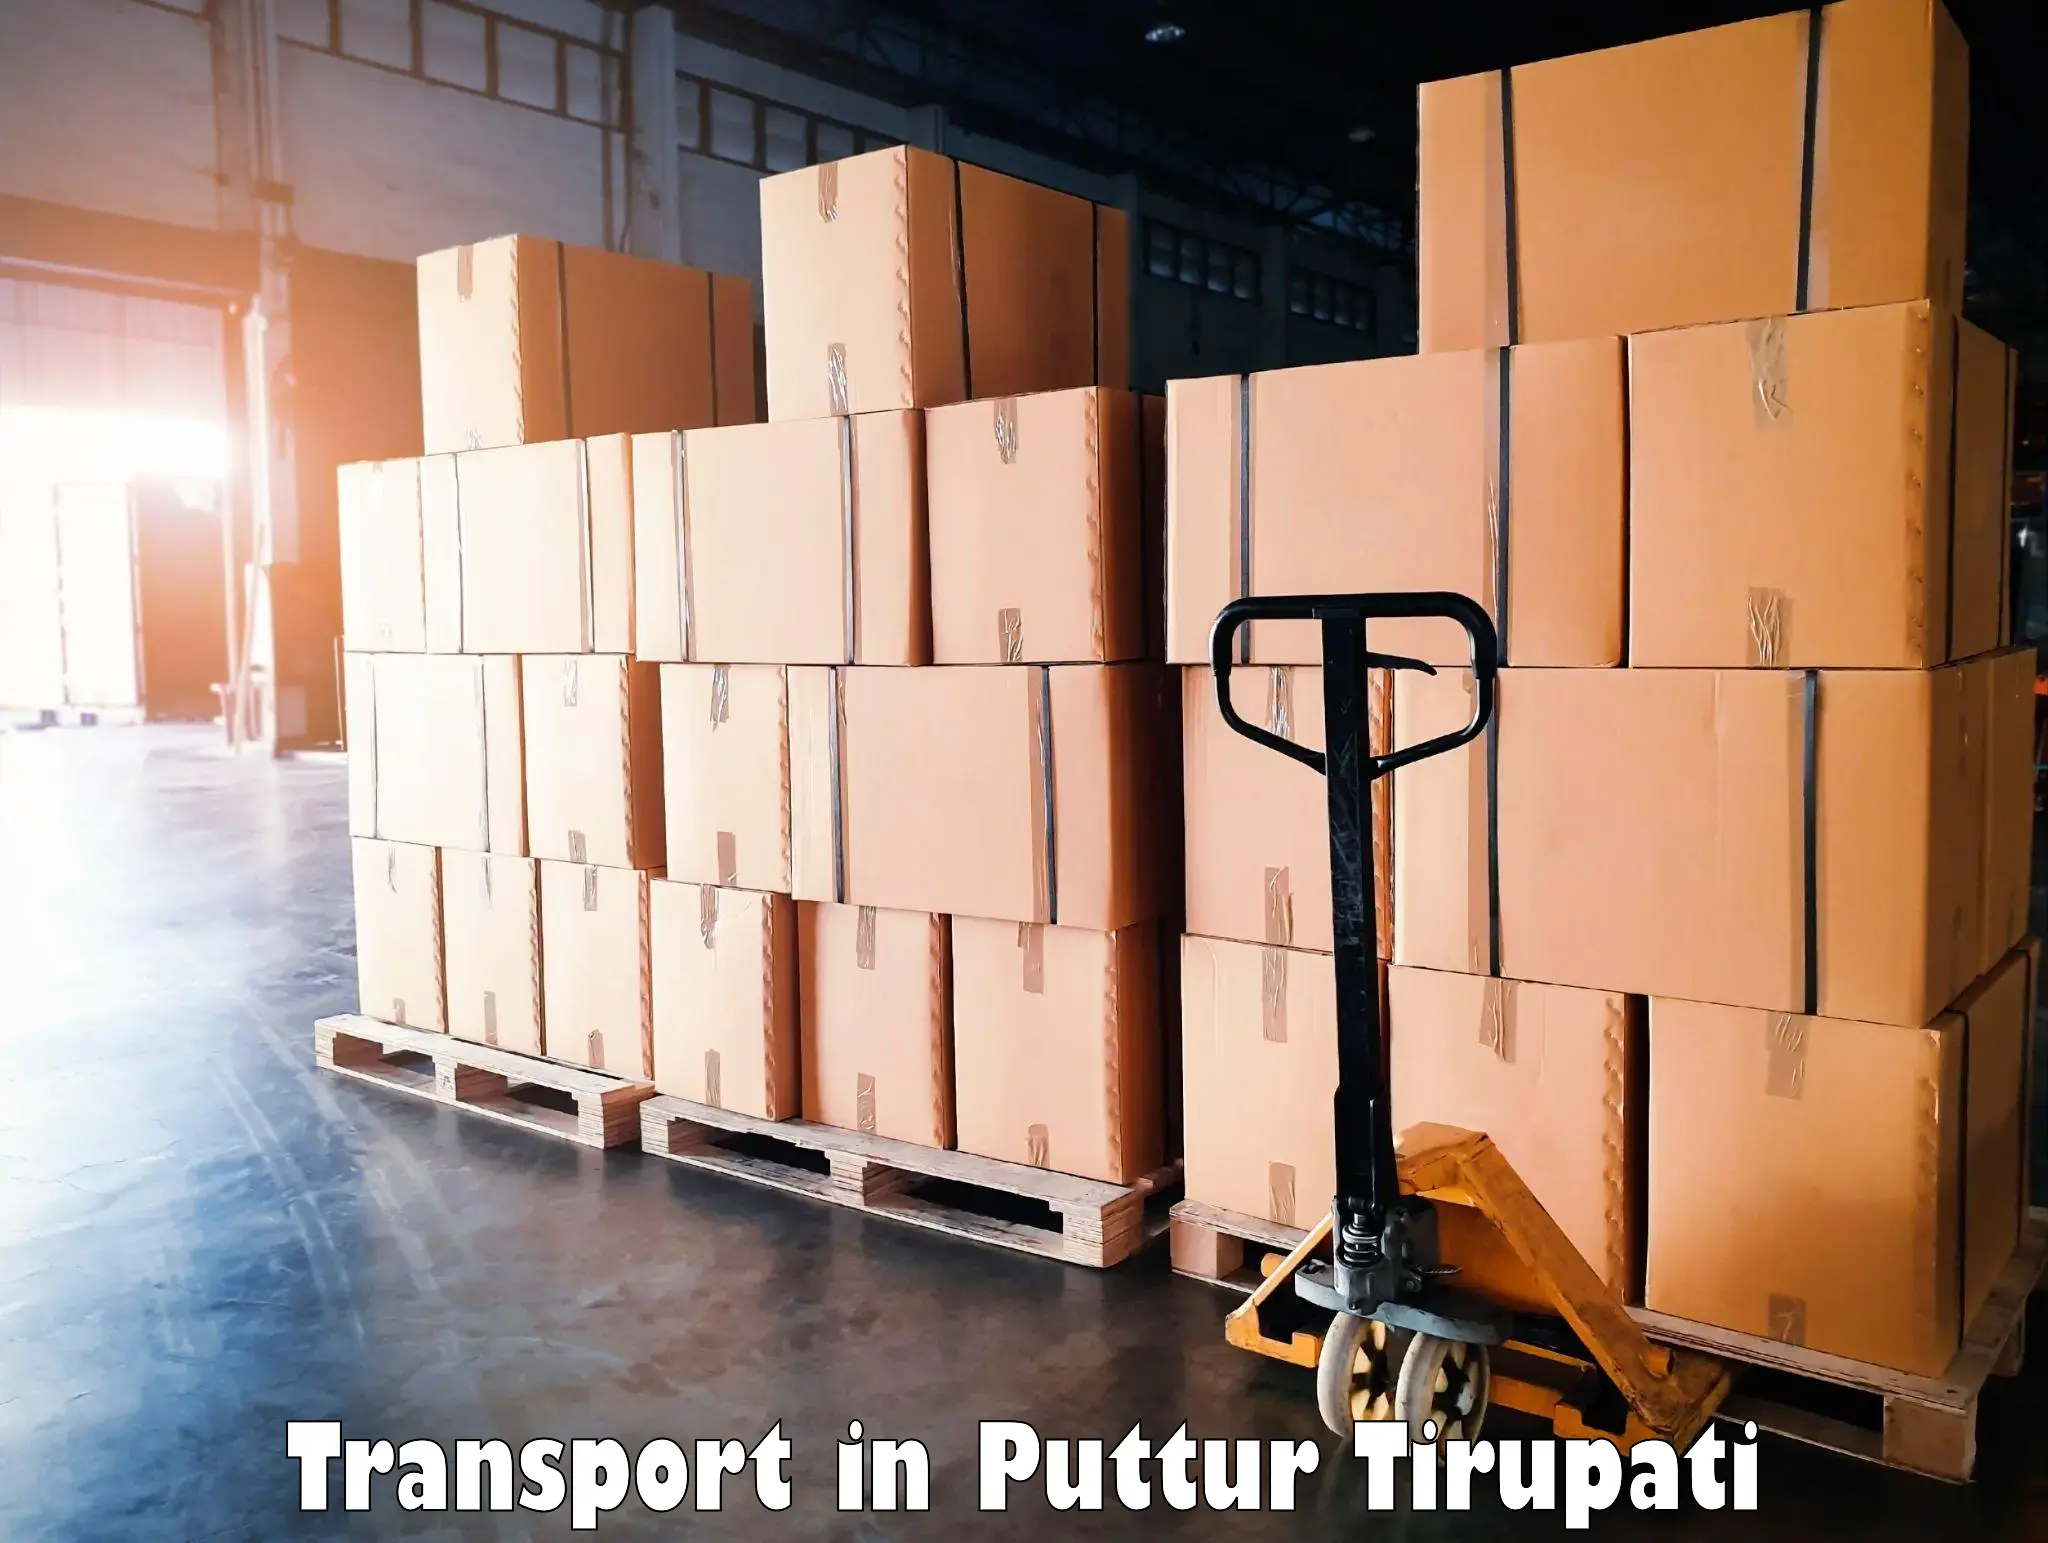 Transport in sharing in Puttur Tirupati